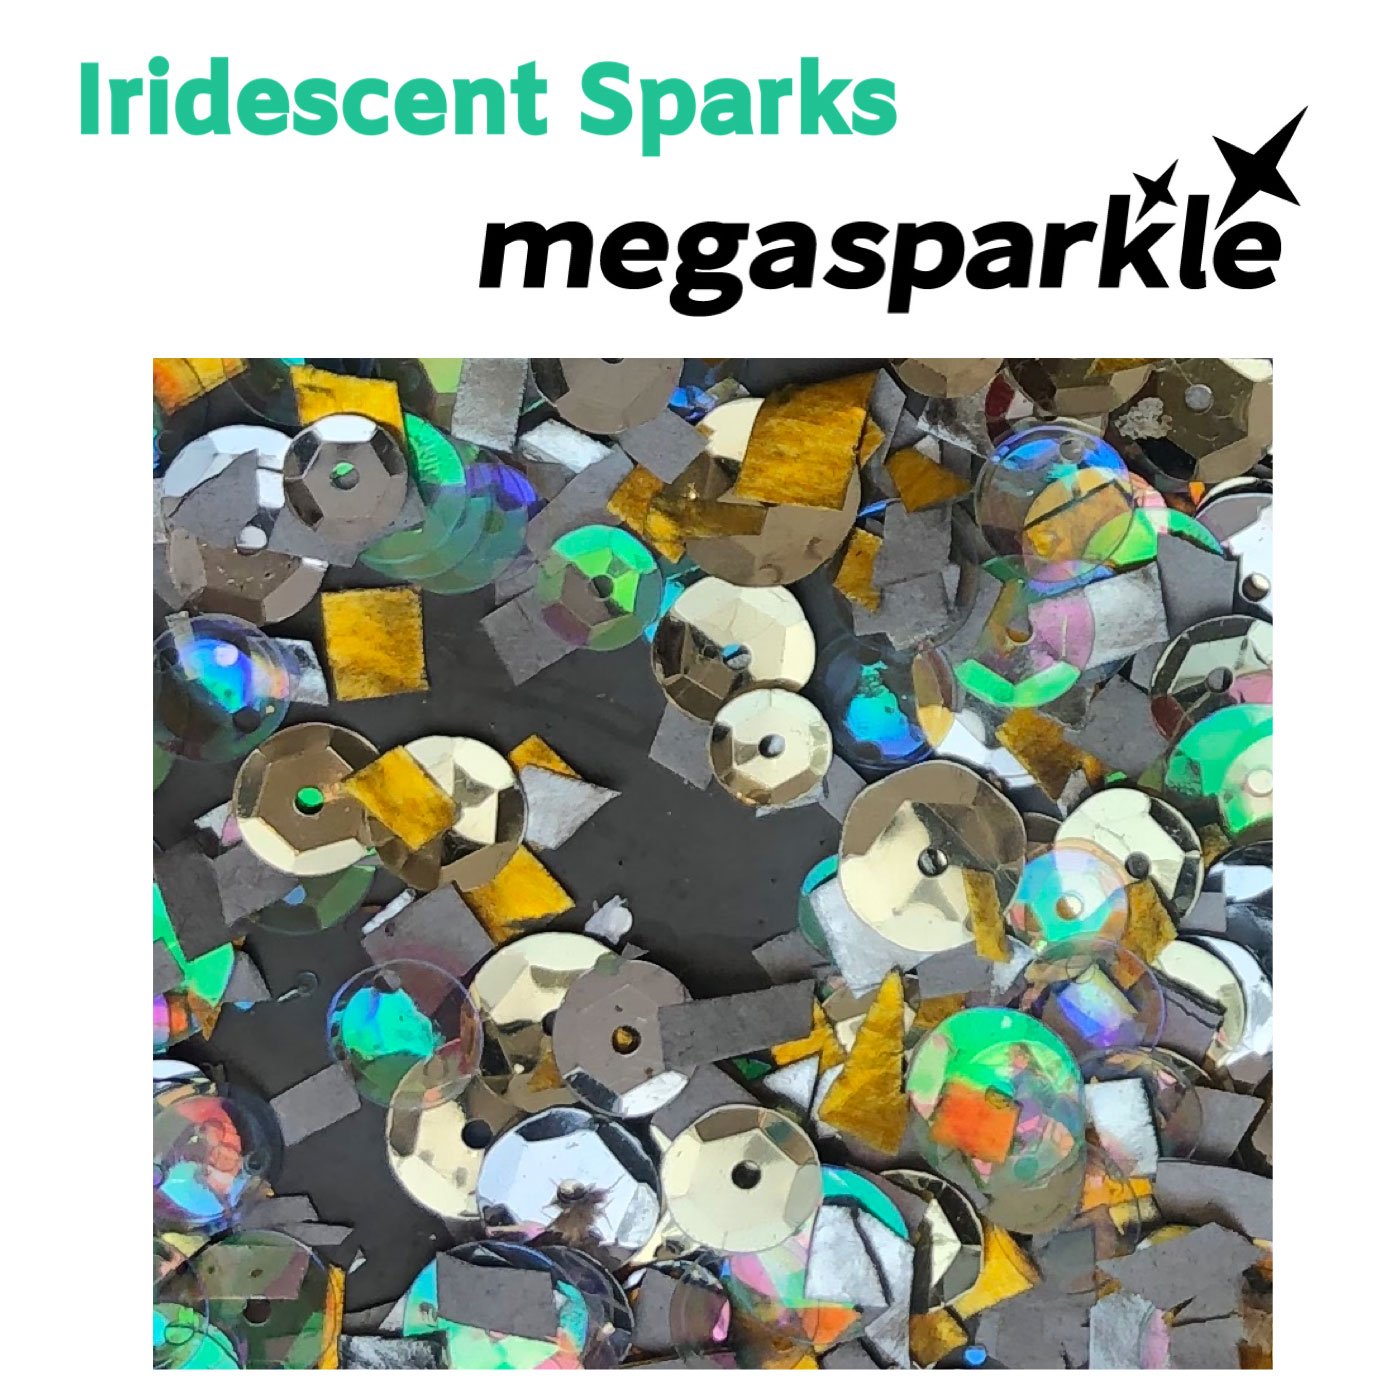 Megasparkle Iridescent Sparks song cover artwork.jpg